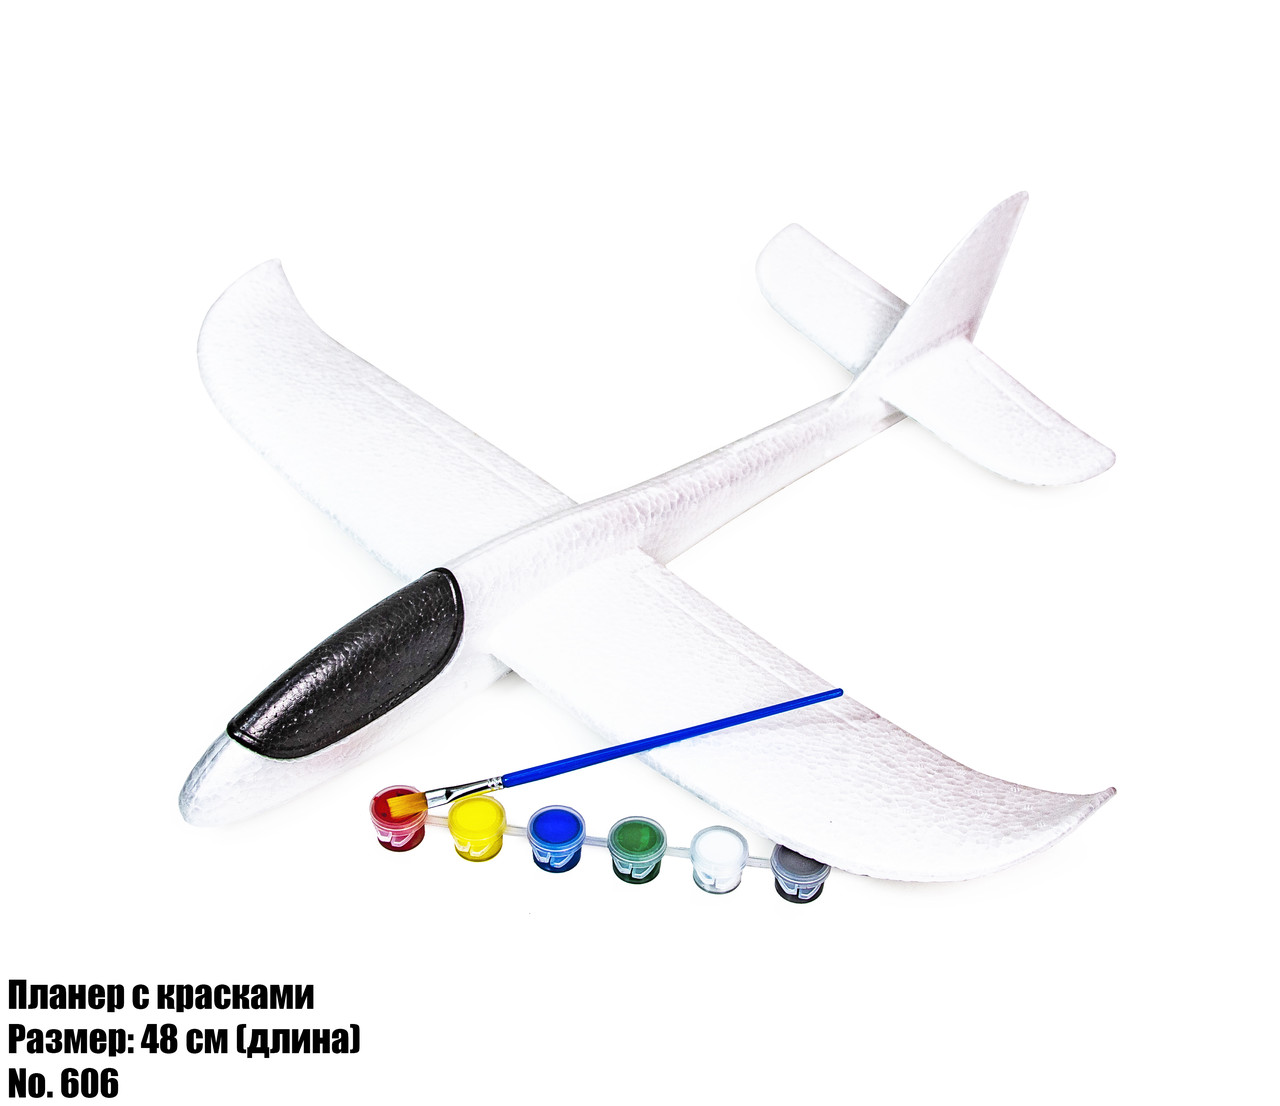 Самолет-планер с красками 606 оптом